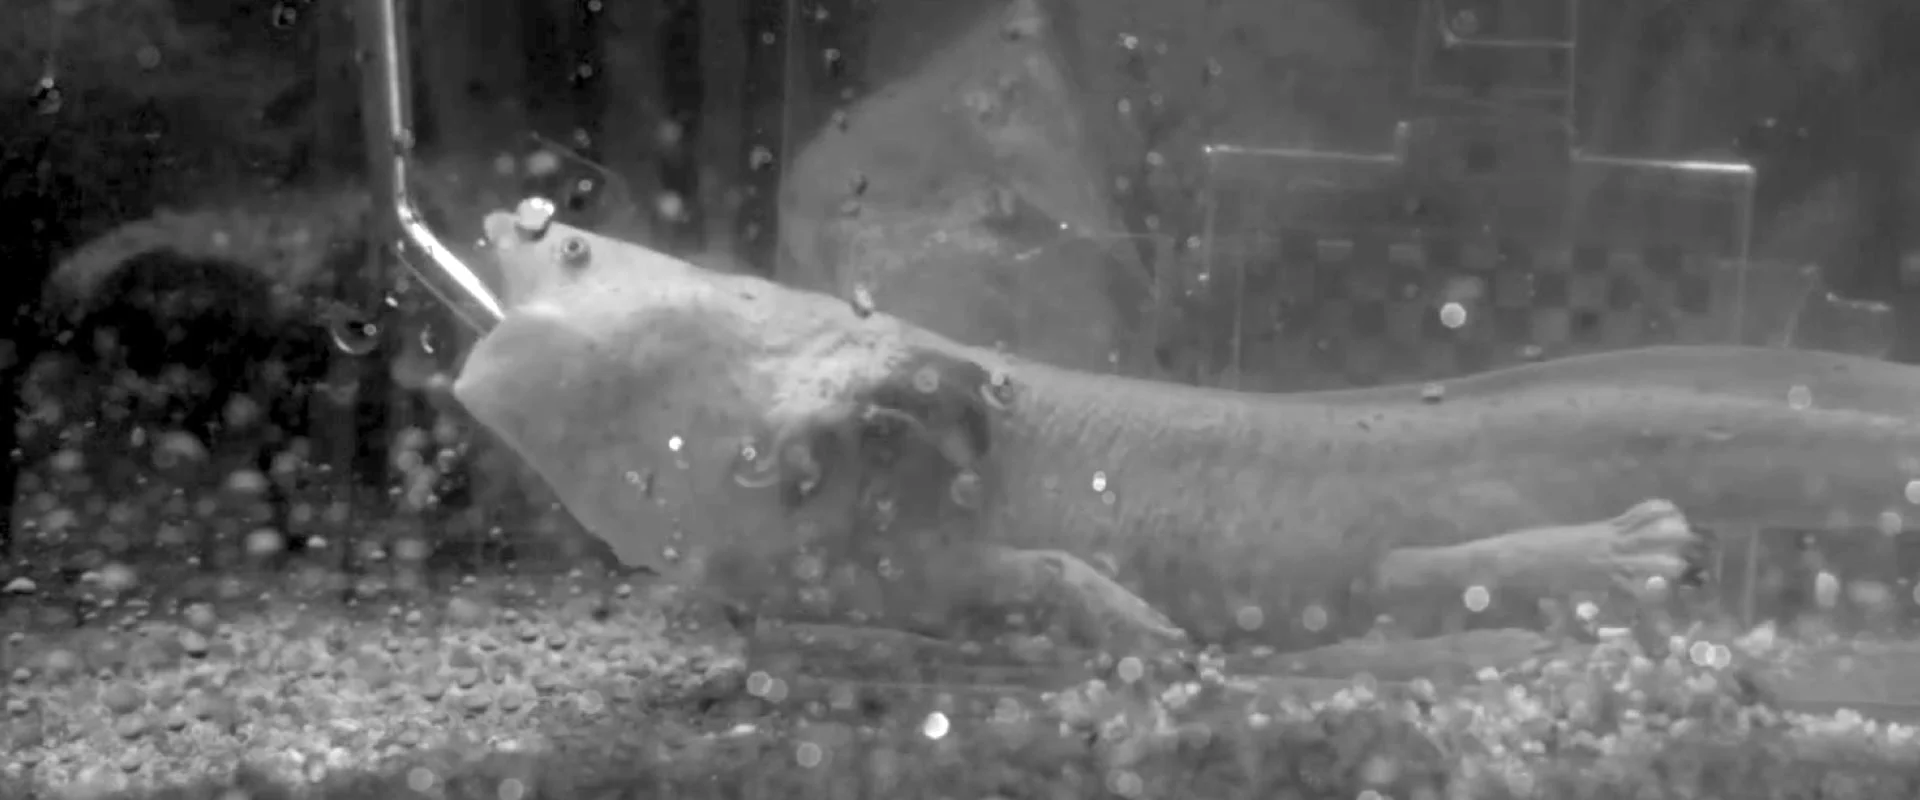 Standbild aus einem Video eines ausgewachsenen Salamanders vom Patzcuaro-See, der einen Wurm frisst